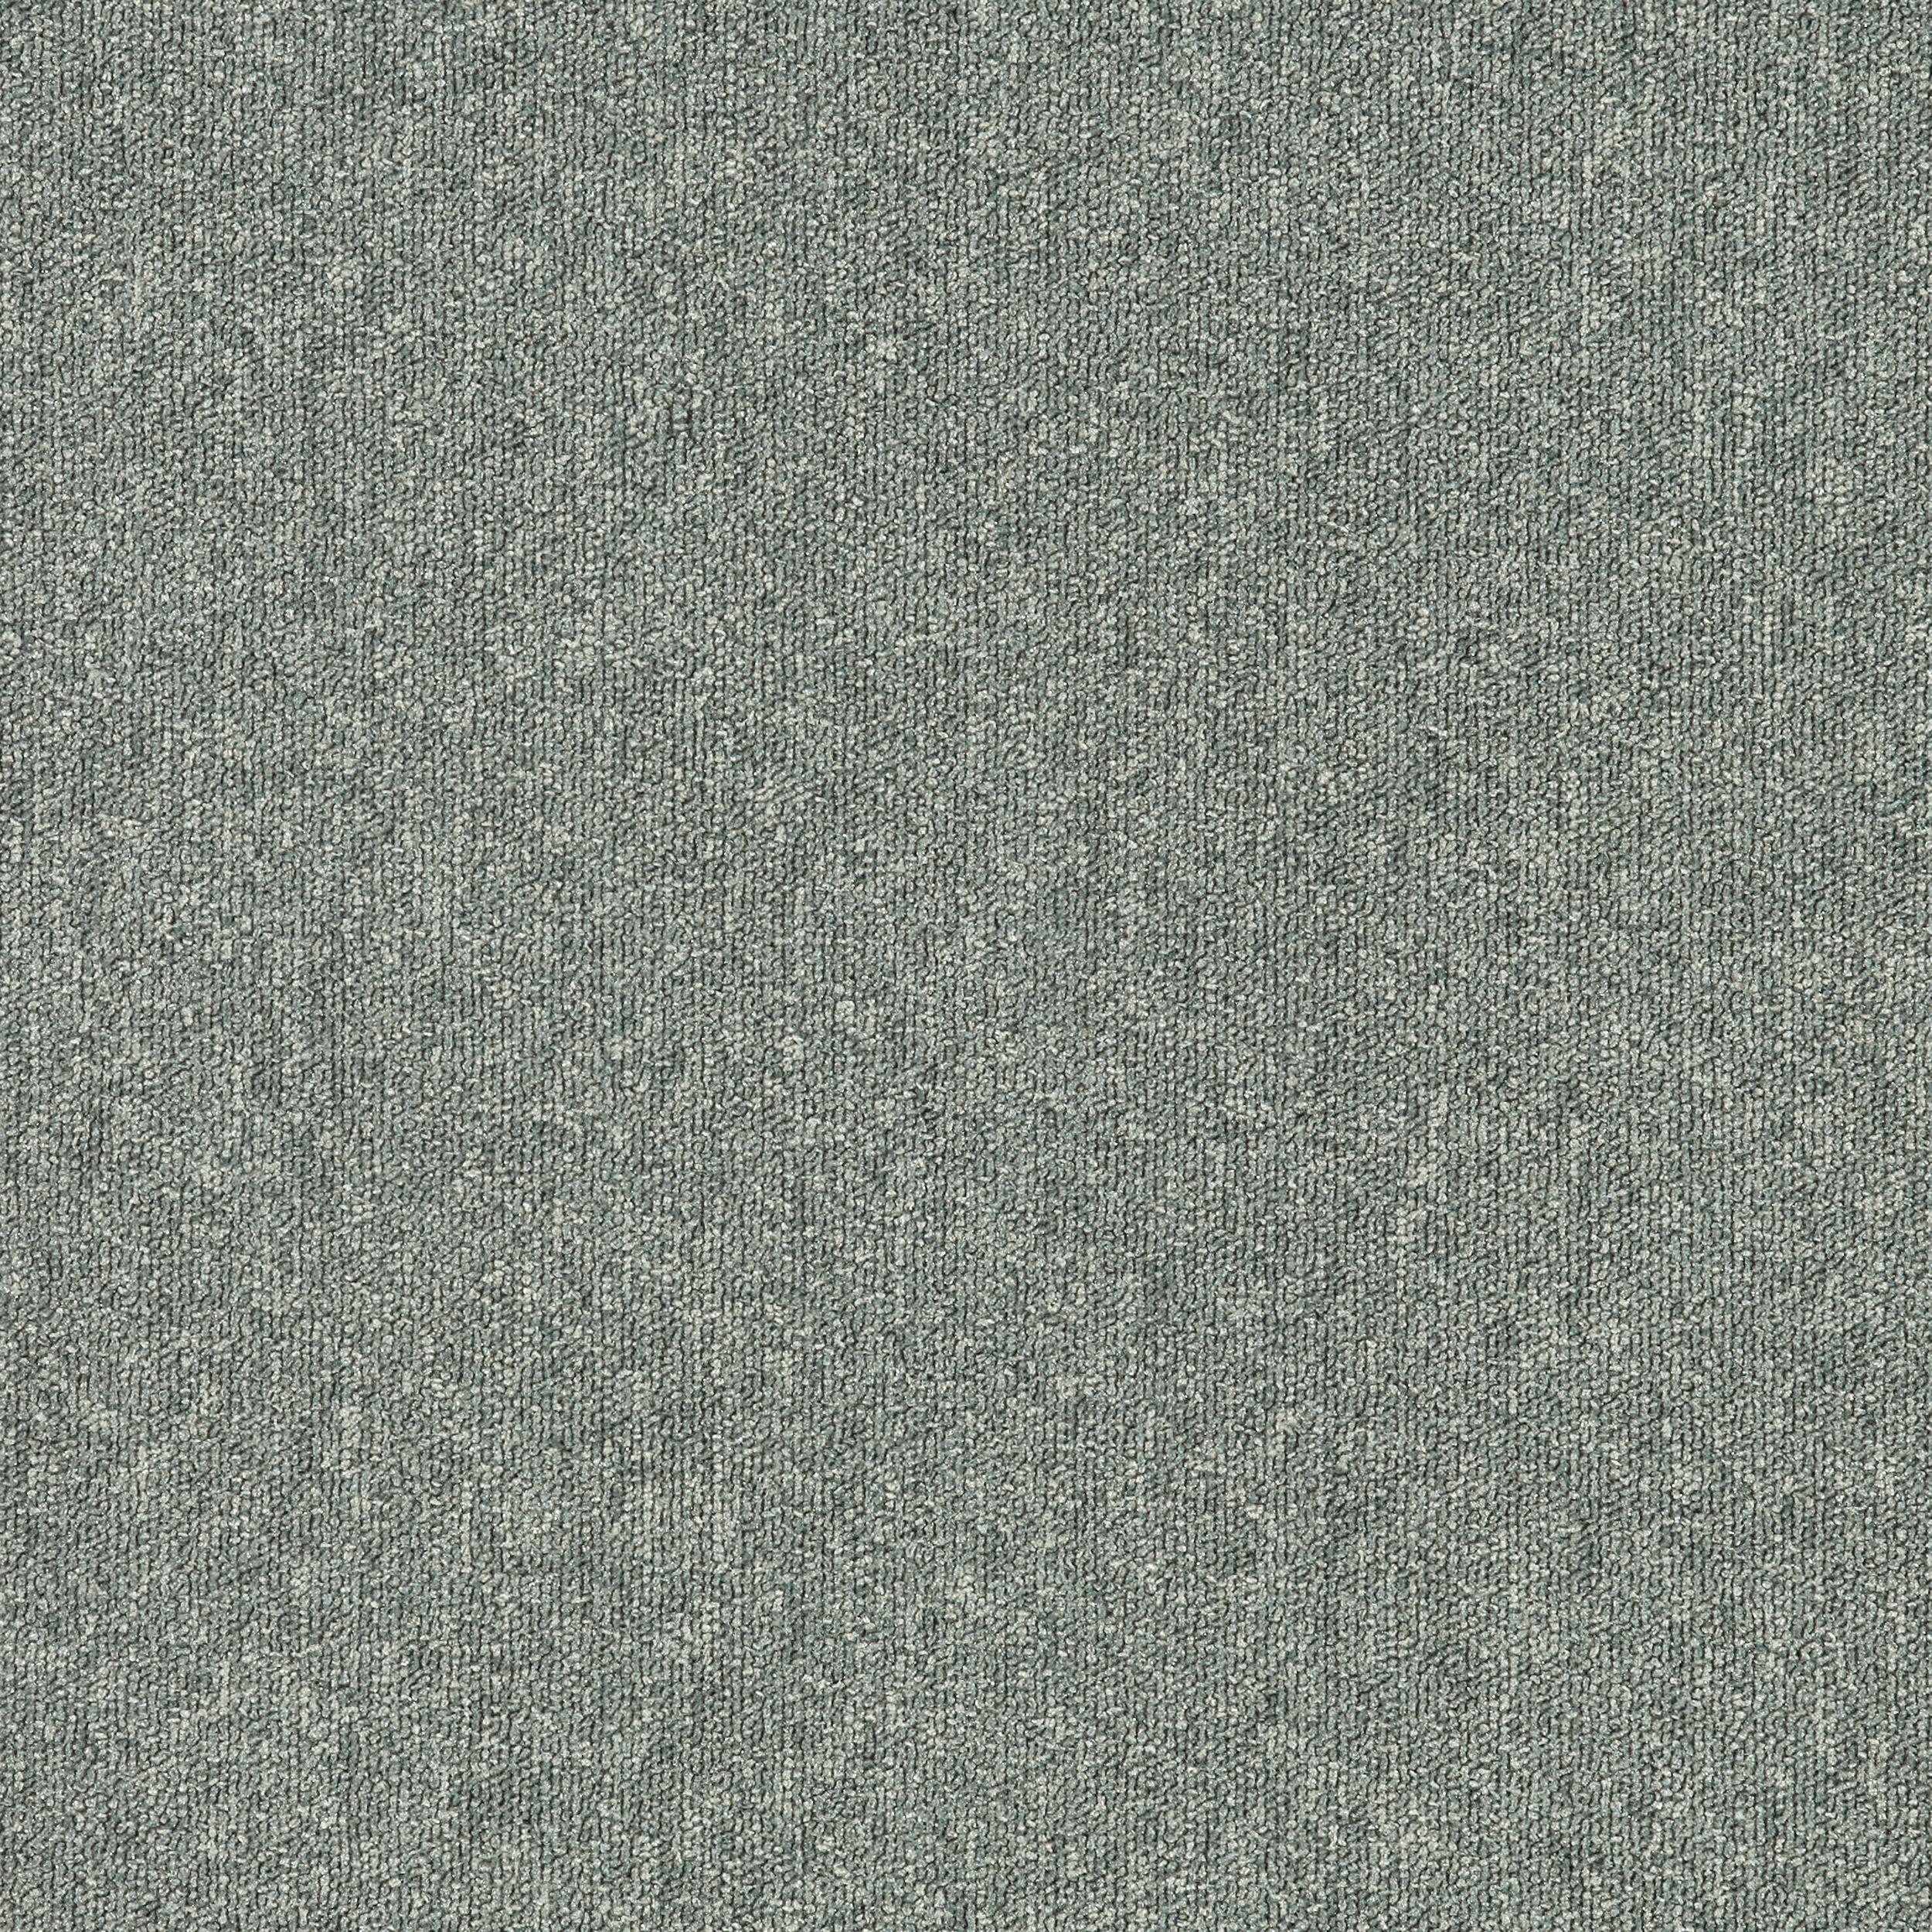 Heuga 580 II carpet tile in Oyster Bildnummer 2